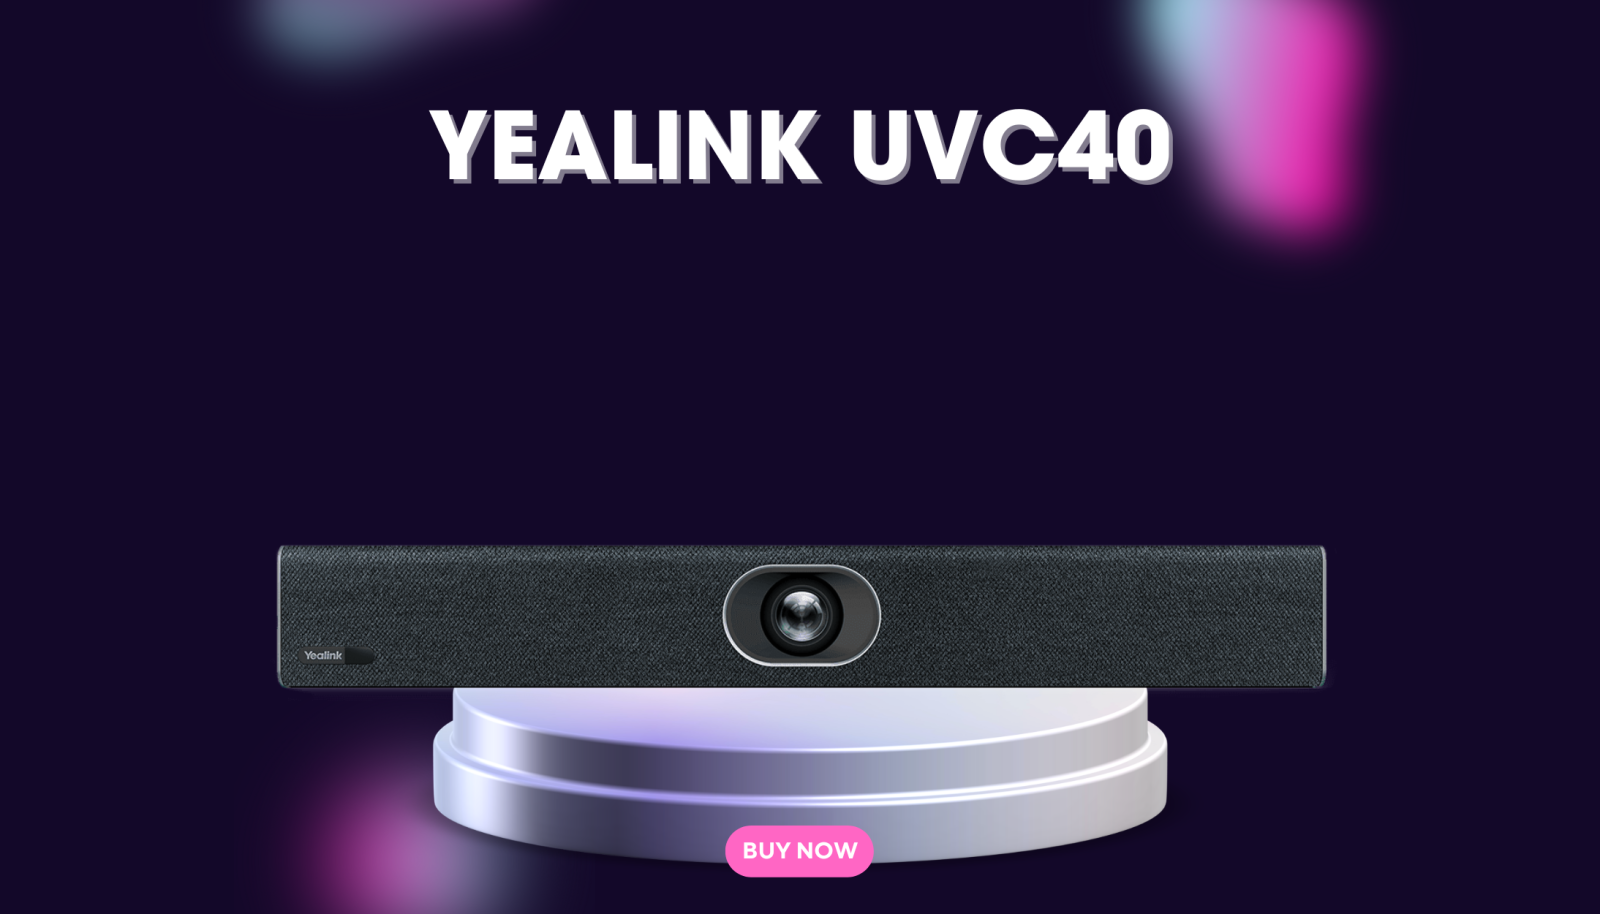 Thiết bị hội nghị Yealink UVC40.